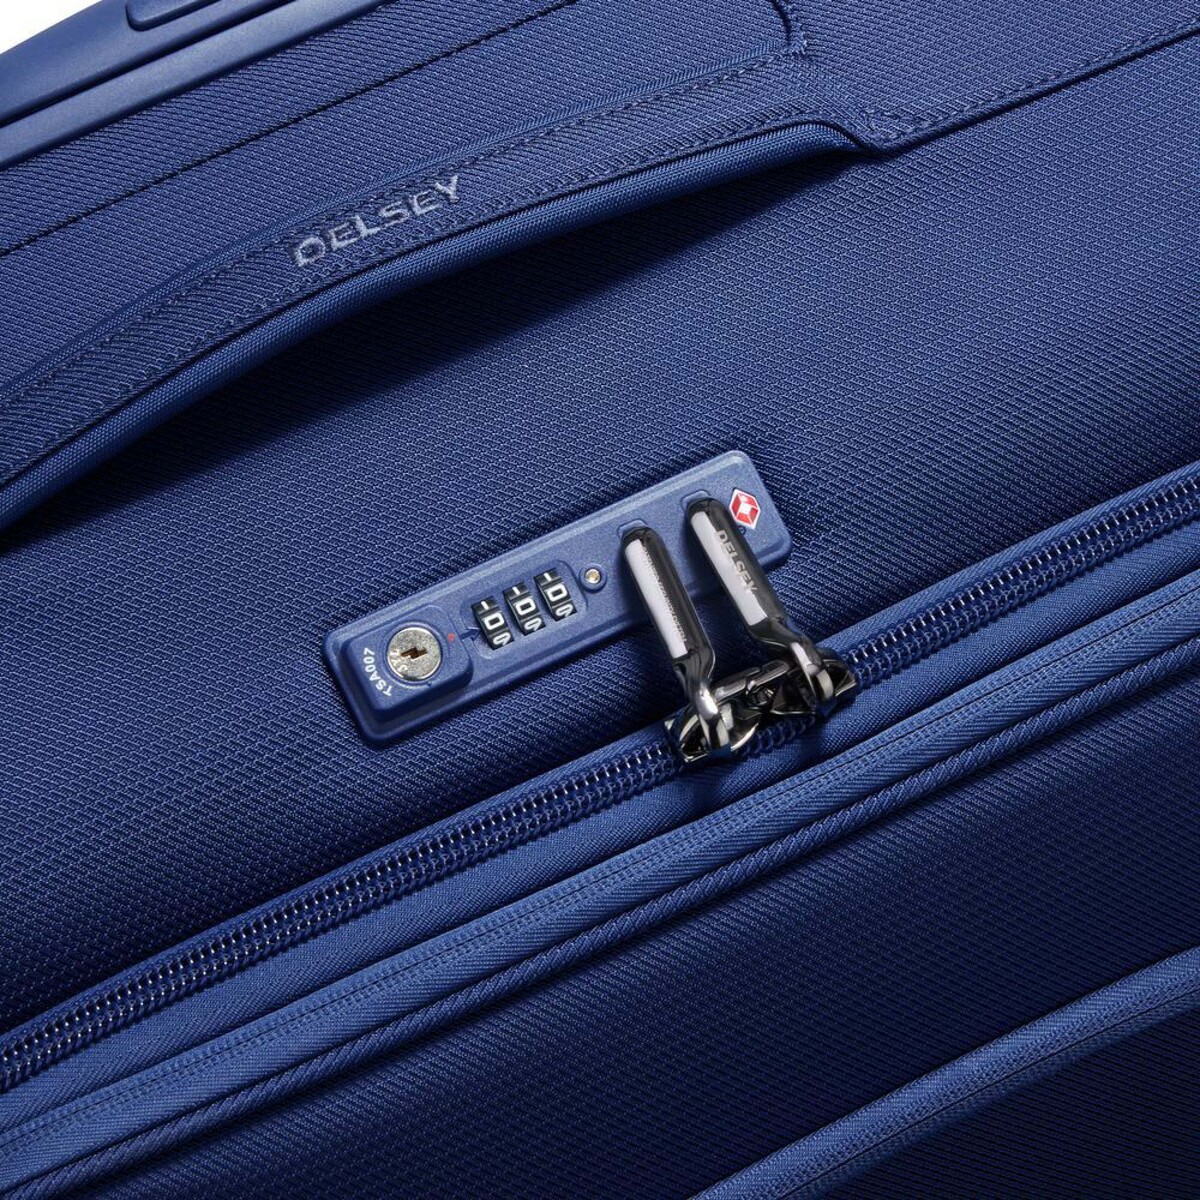 ديلسي مونتمارتر اير 2.0 حقيبة سفر ، 4 عجلات مرنة، 55 سم، أزرق